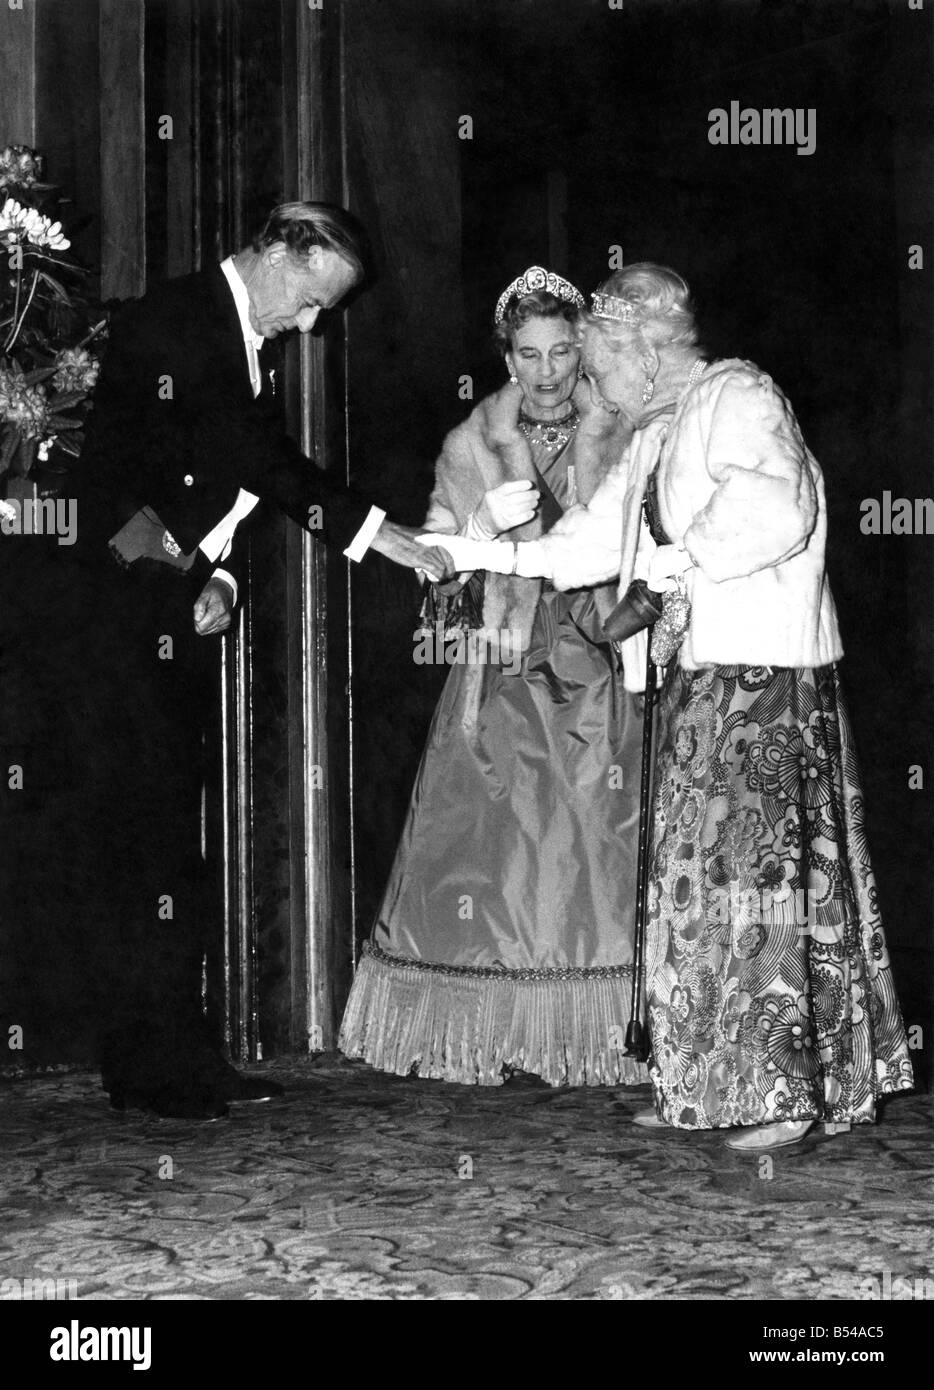 El lunes, 30 de mayo de 1977, la Reina y el Príncipe Felipe, acompañado por otros miembros de la Familia Real, el Jubileo de Plata asistieron a una gala en la Royal Opera House, Covent Garden, donde vieron los extractos de la ópera y el ballet. Princess Alice St. Glouceter (izquierda) y la Princesa Alice, Courtess St. Athlone. De mayo de 1977 P016908 Foto de stock